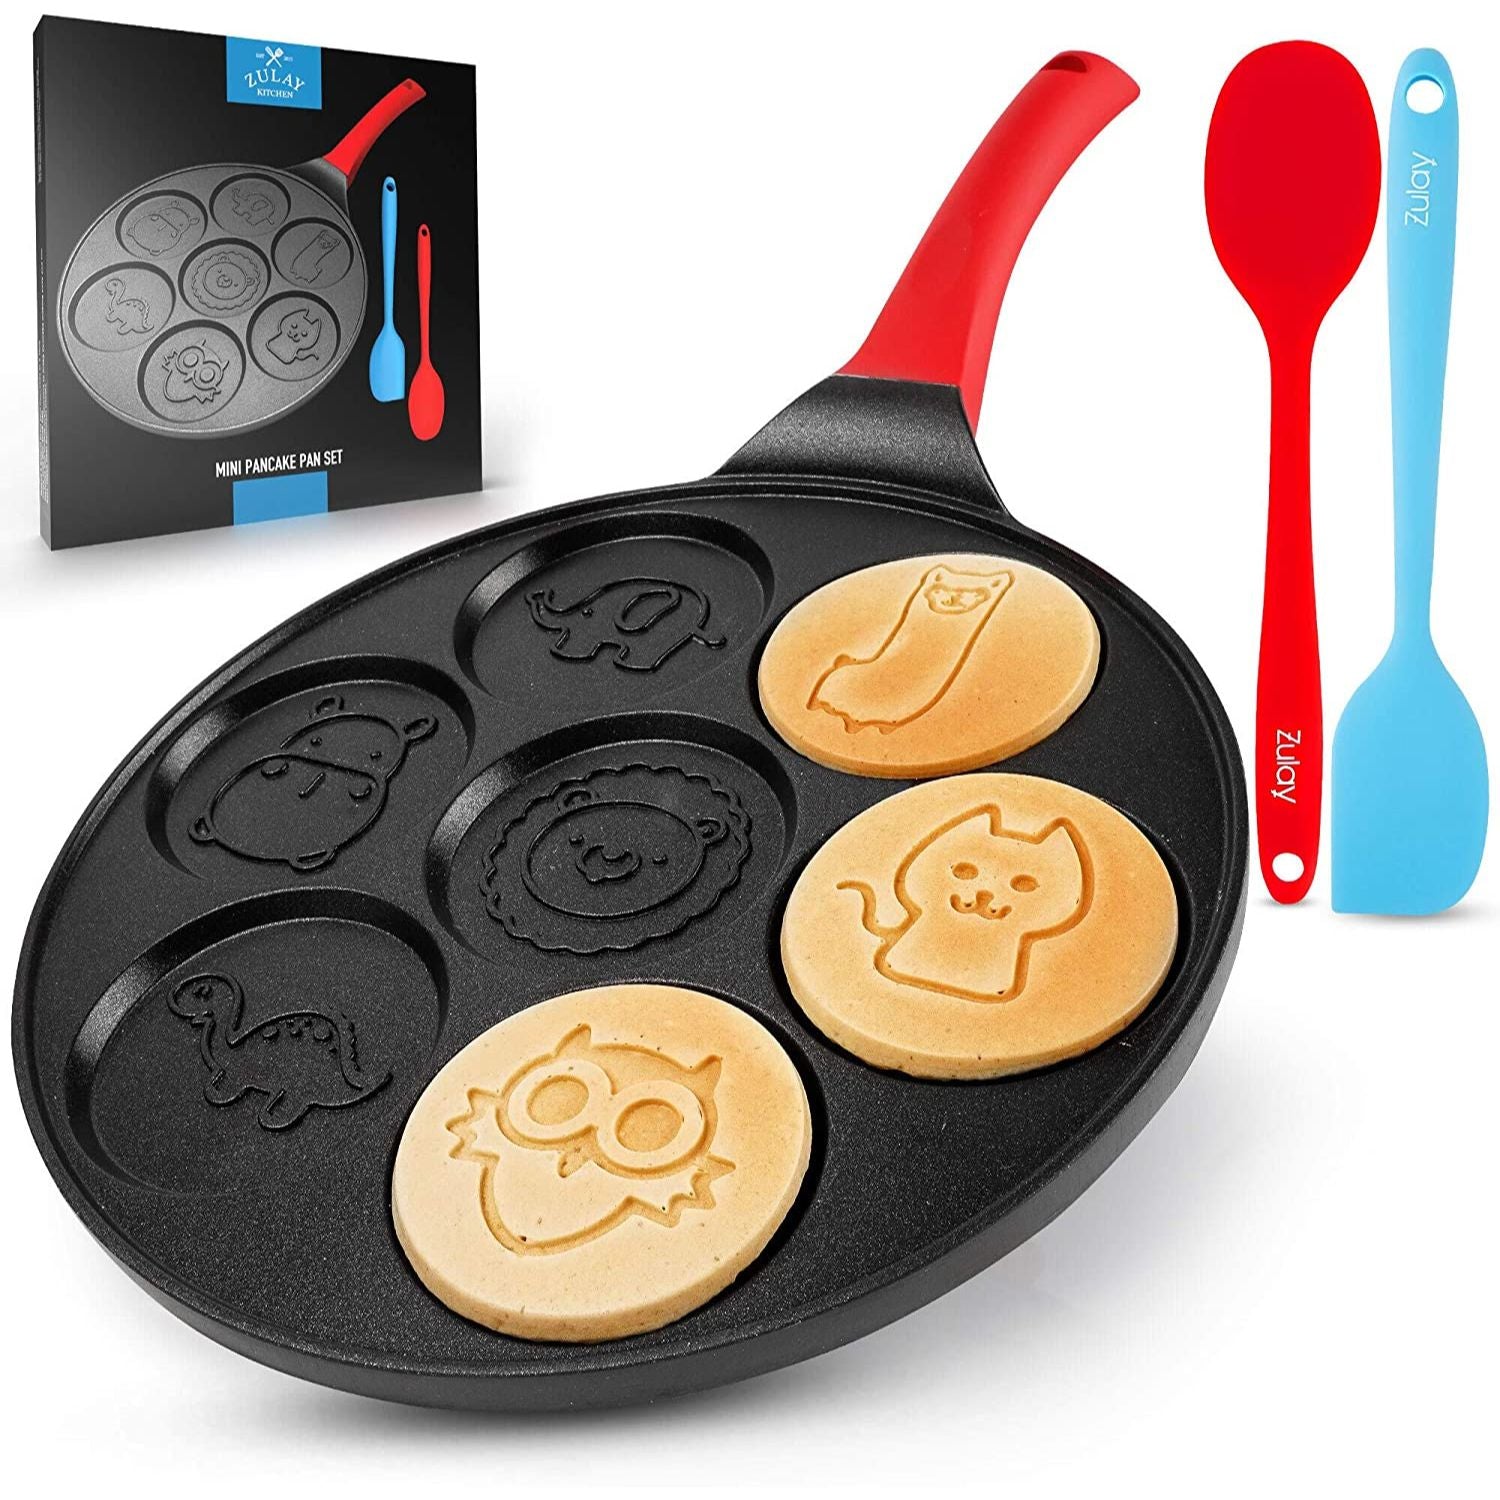 Mini Pancake Maker With 7 Animal Face Designs Plus 2 Bonus Spatulas